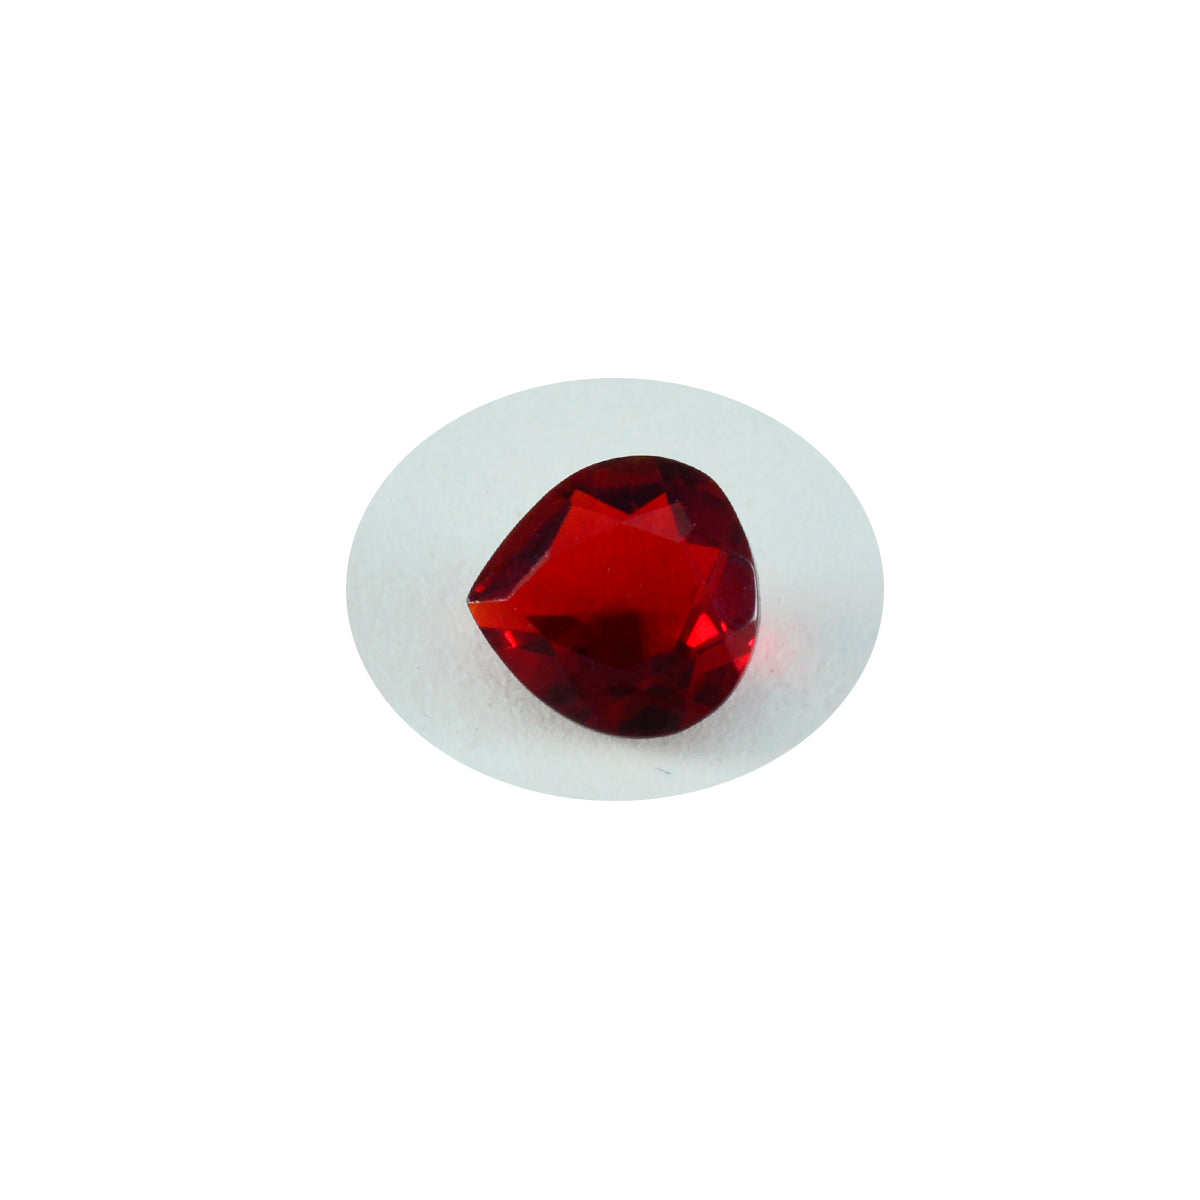 riyogems 1шт красный рубин cz ограненный 8x8 мм в форме сердца превосходное качество свободный драгоценный камень